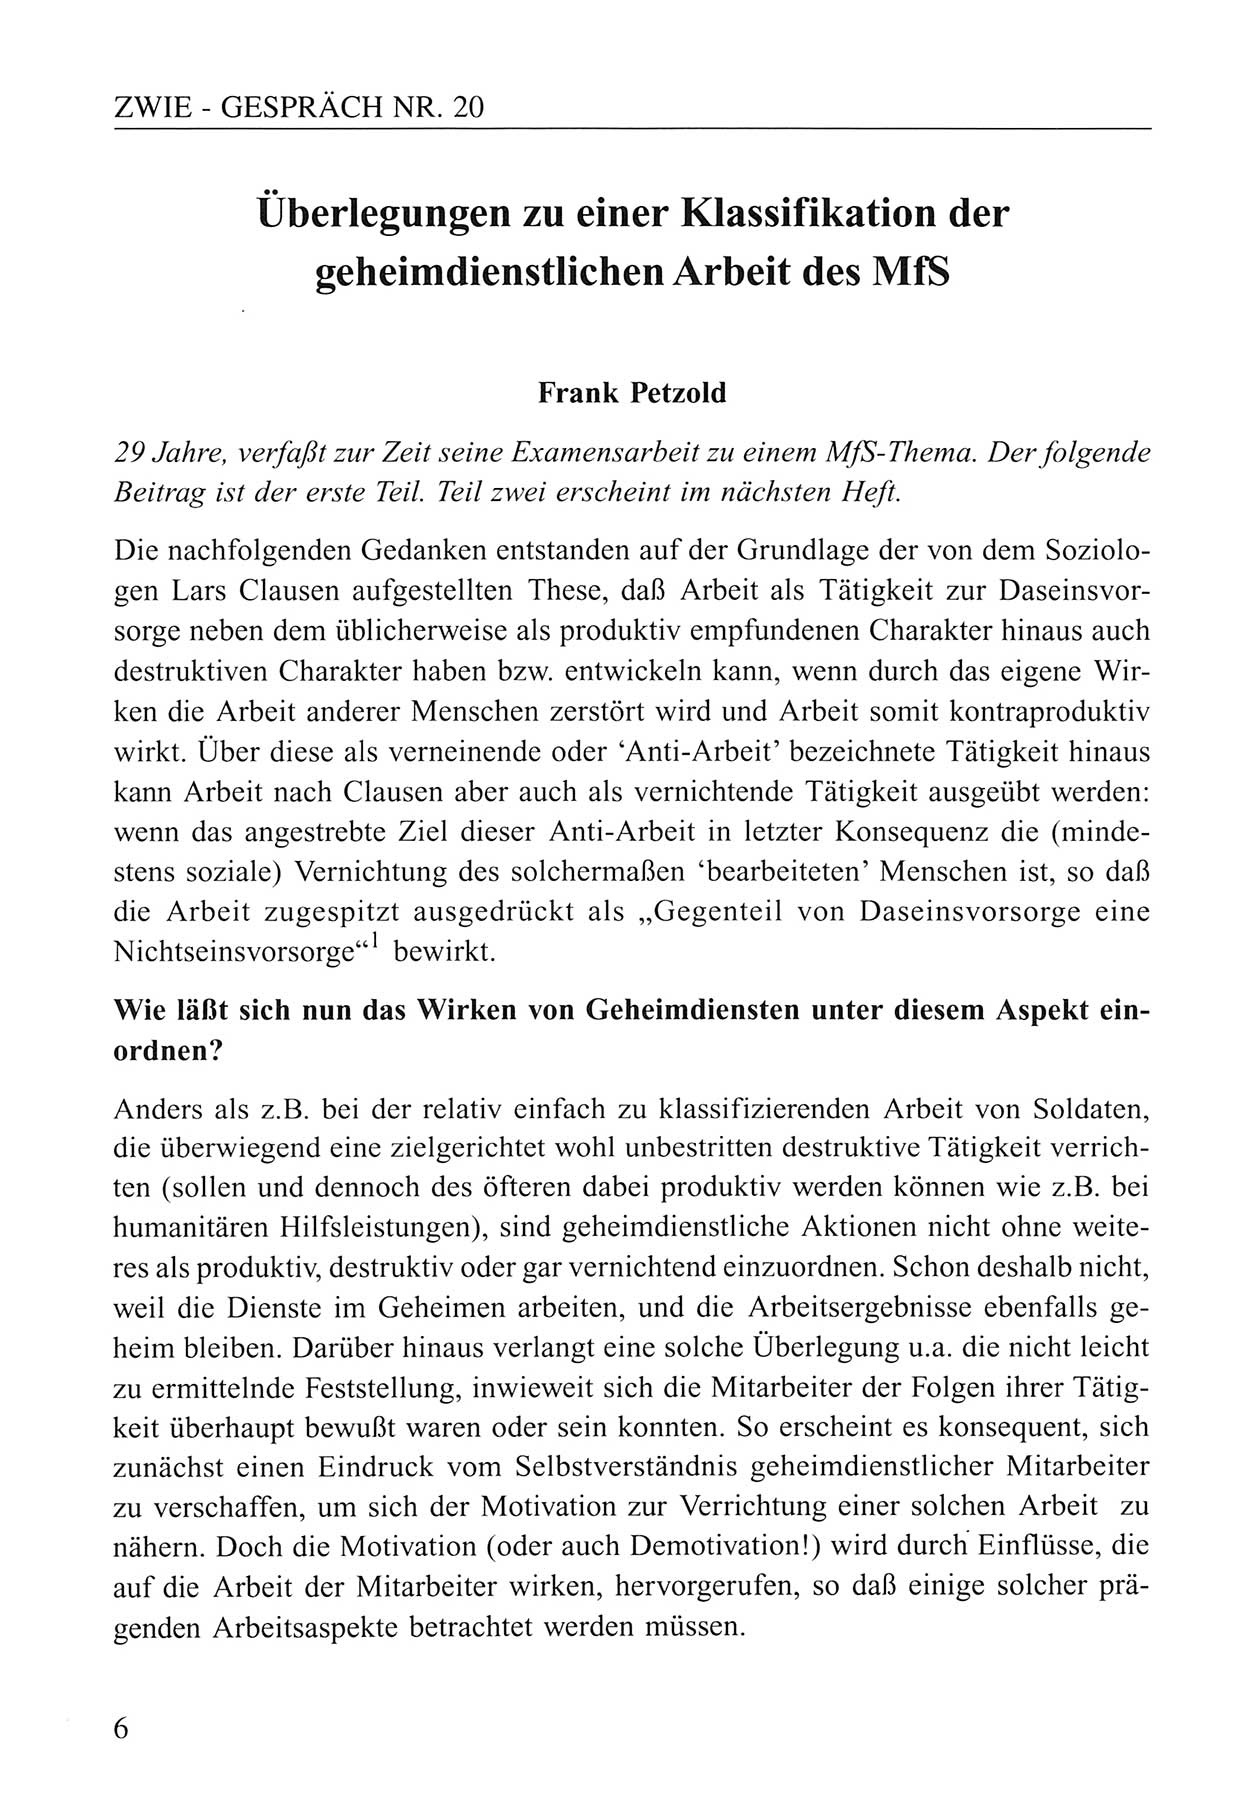 Zwie-Gespräch, Beiträge zum Umgang mit der Staatssicherheits-Vergangenheit [Deutsche Demokratische Republik (DDR)], Ausgabe Nr. 20, Berlin 1994, Seite 6 (Zwie-Gespr. Ausg. 20 1994, S. 6)